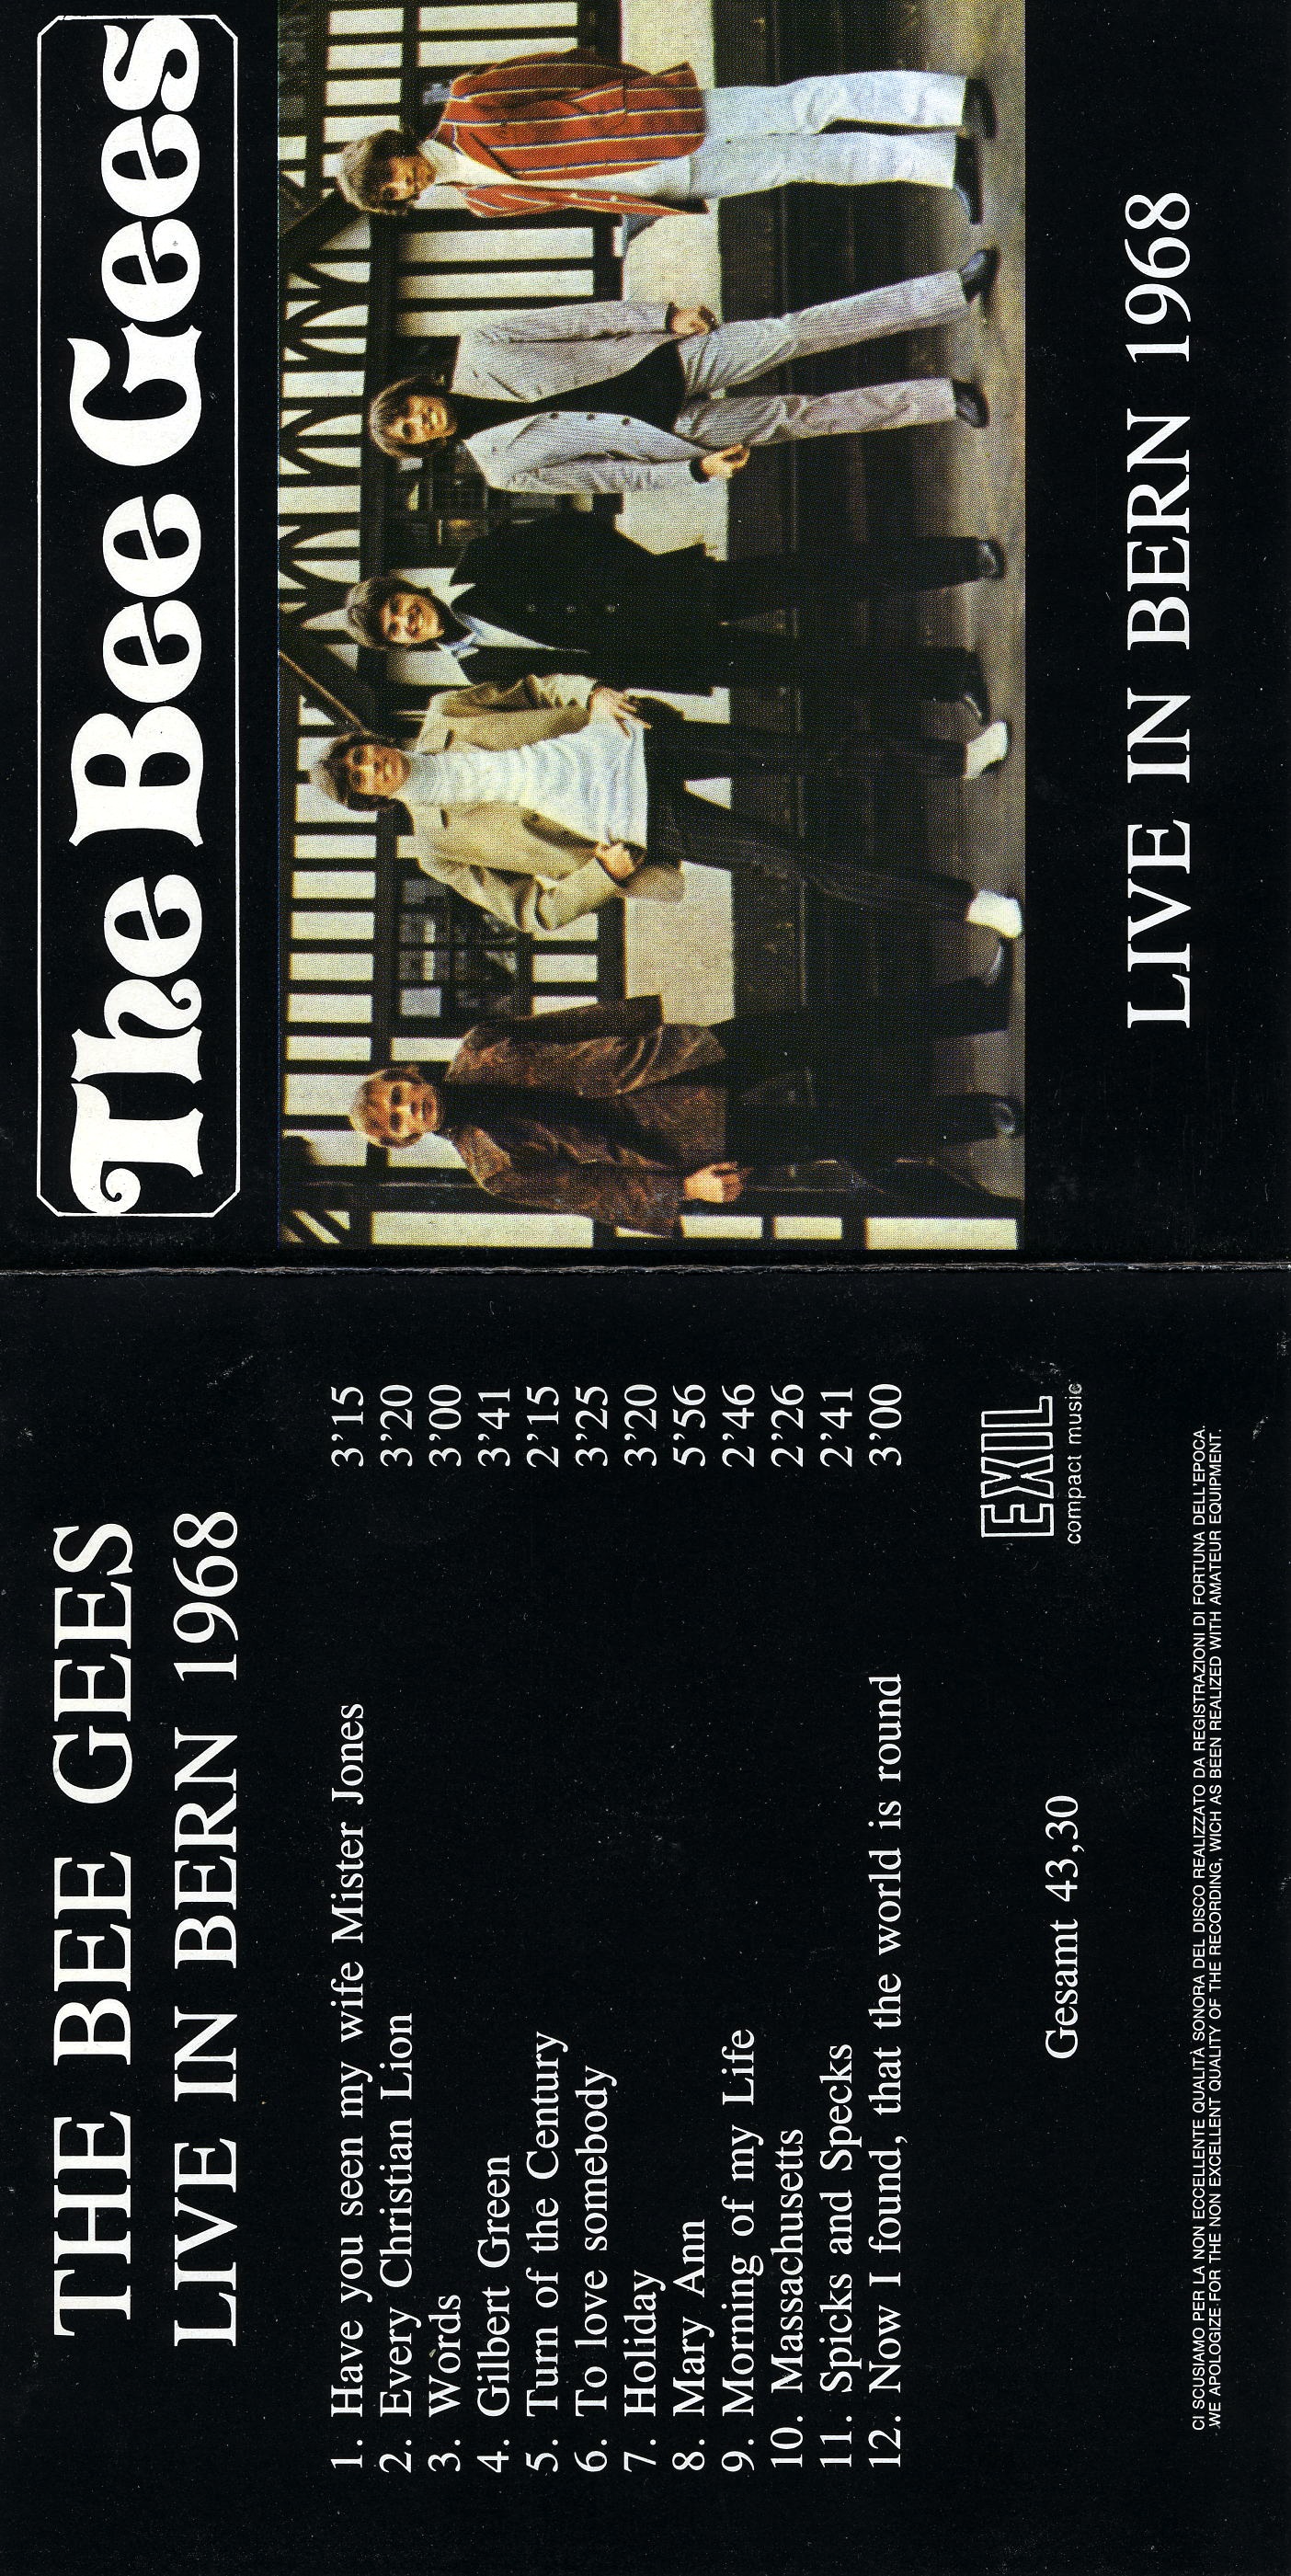 BeeGees1968-03-03StadthalleBernSwitzerland (3).jpg